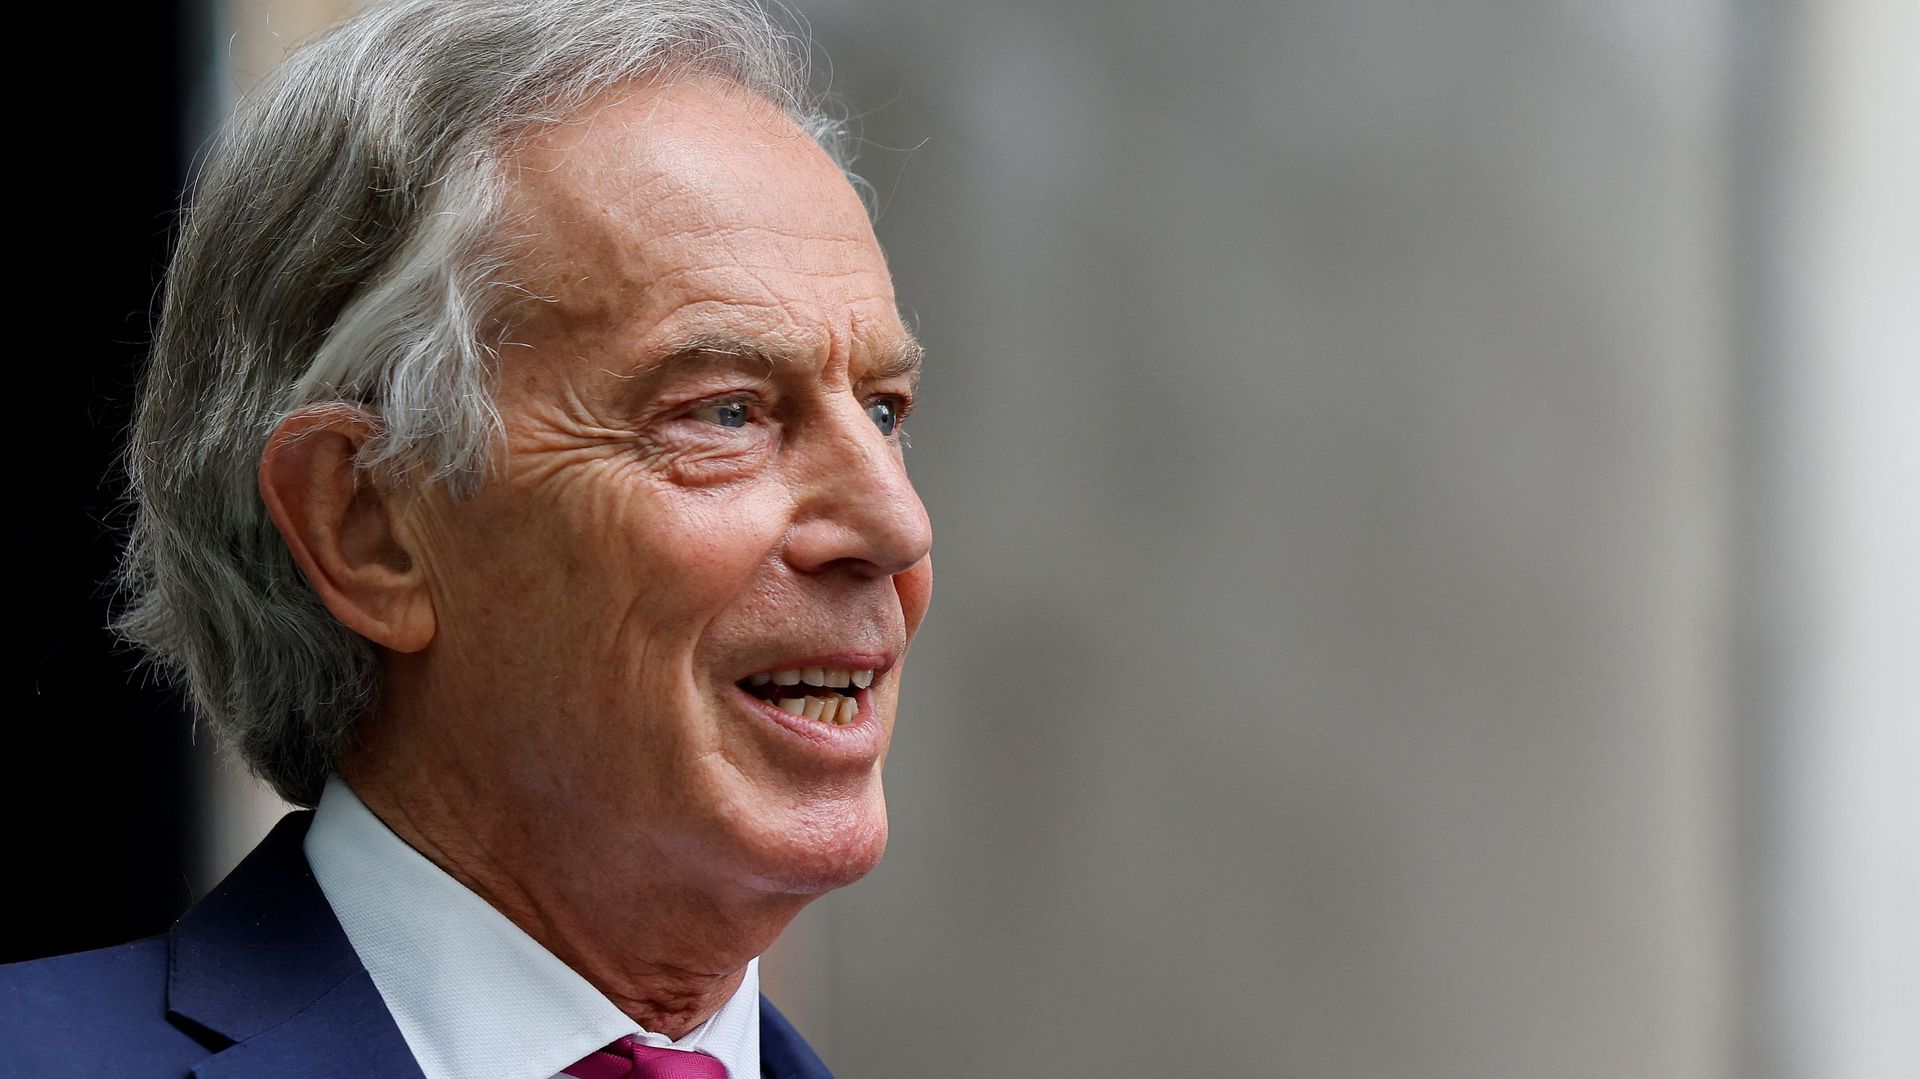 Fait chevalier par la reine, l’ex-premier ministre britannique Tony Blair se défend face à ses détracteurs